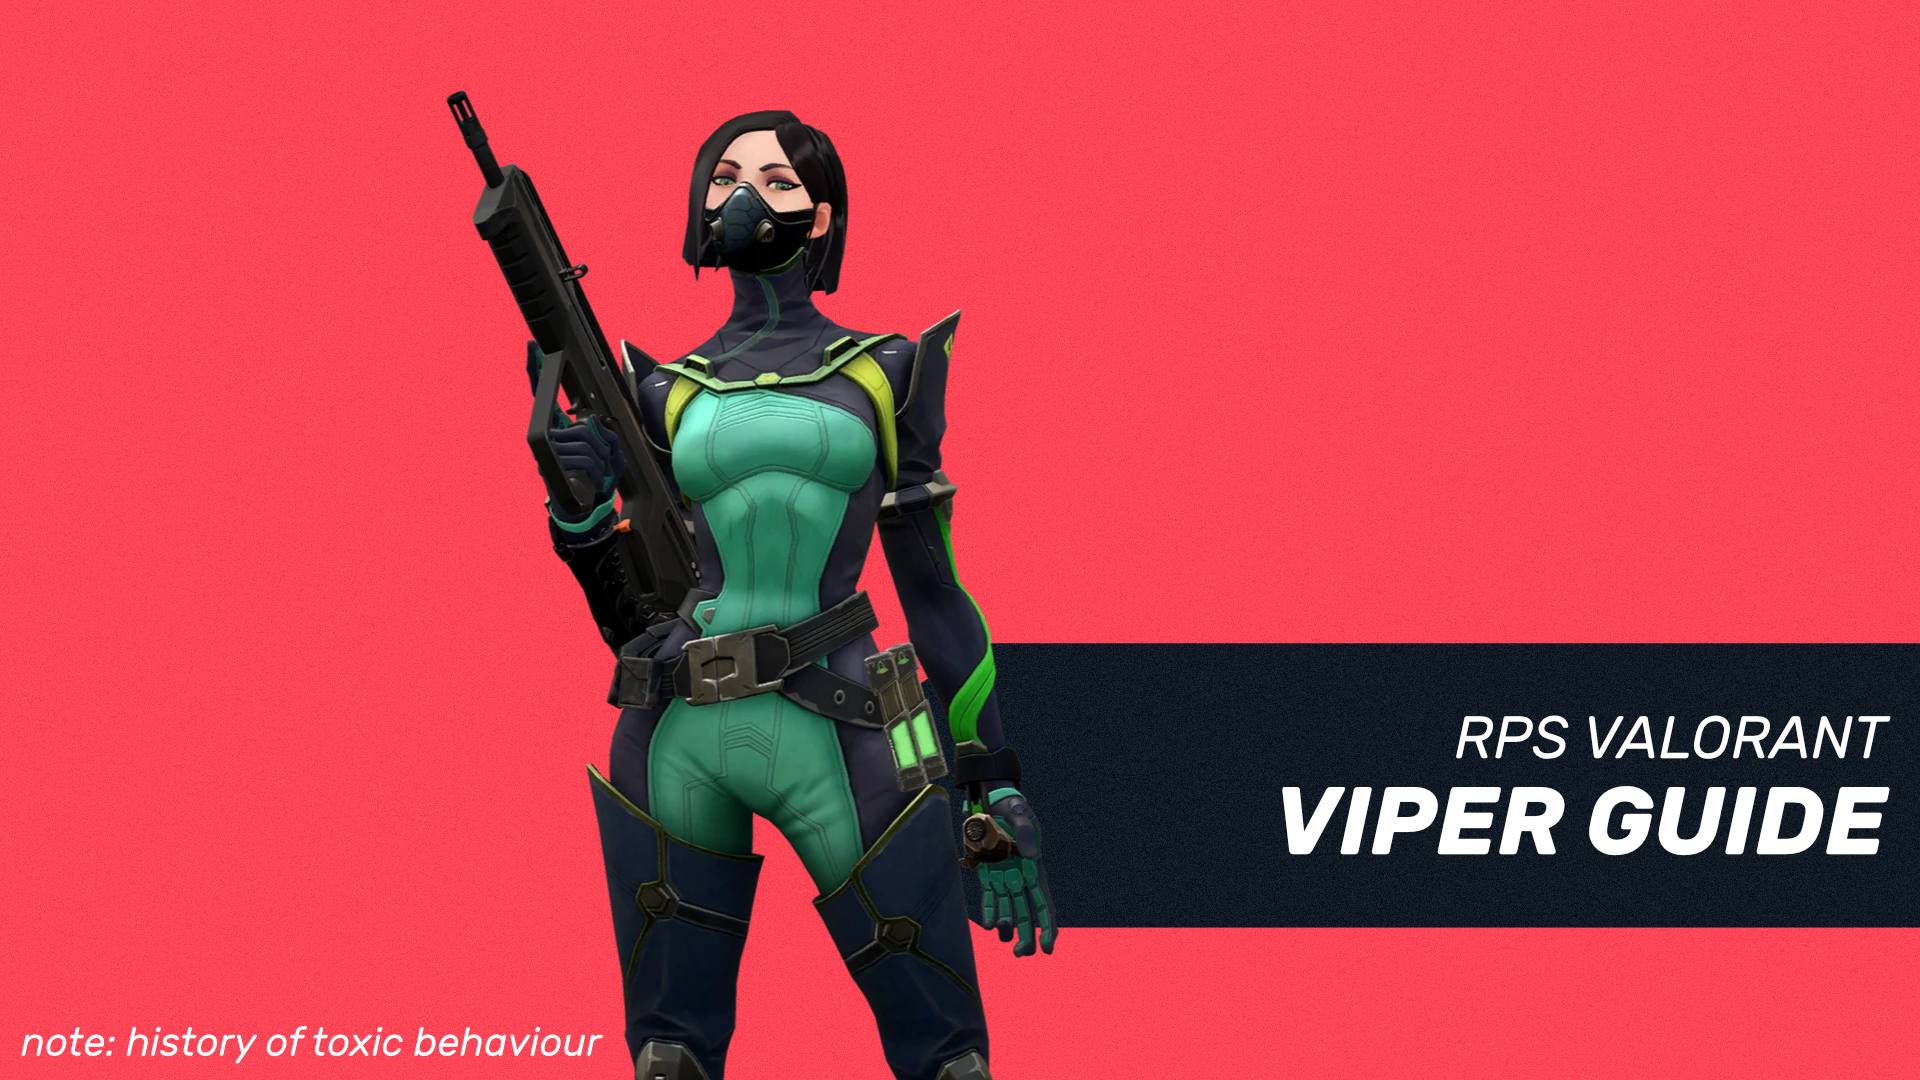 viper valorant abilities